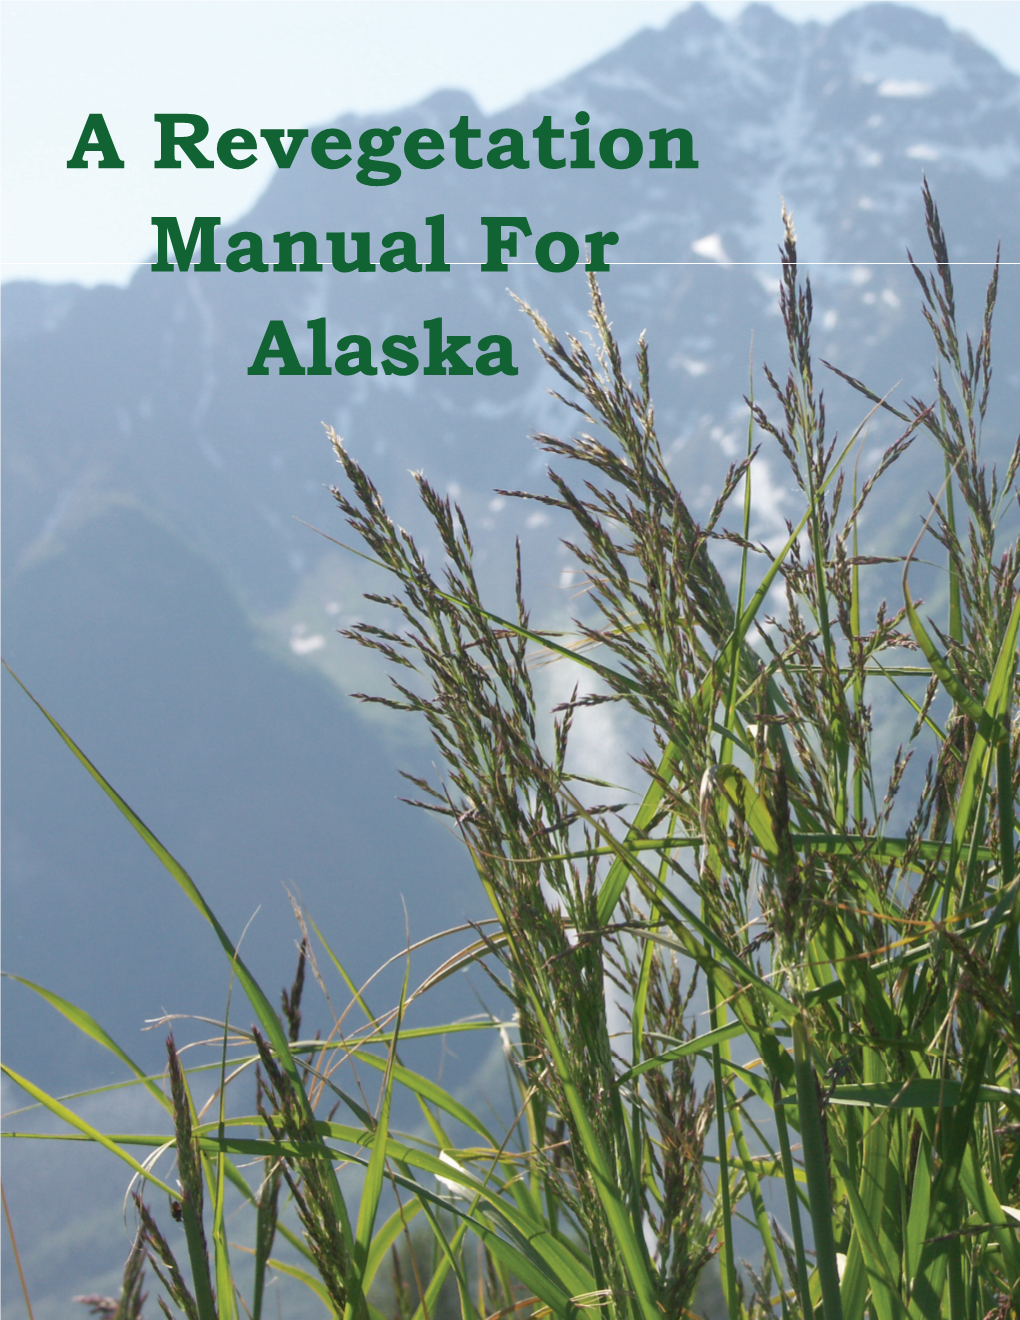 Revegetation Manual for Alaska